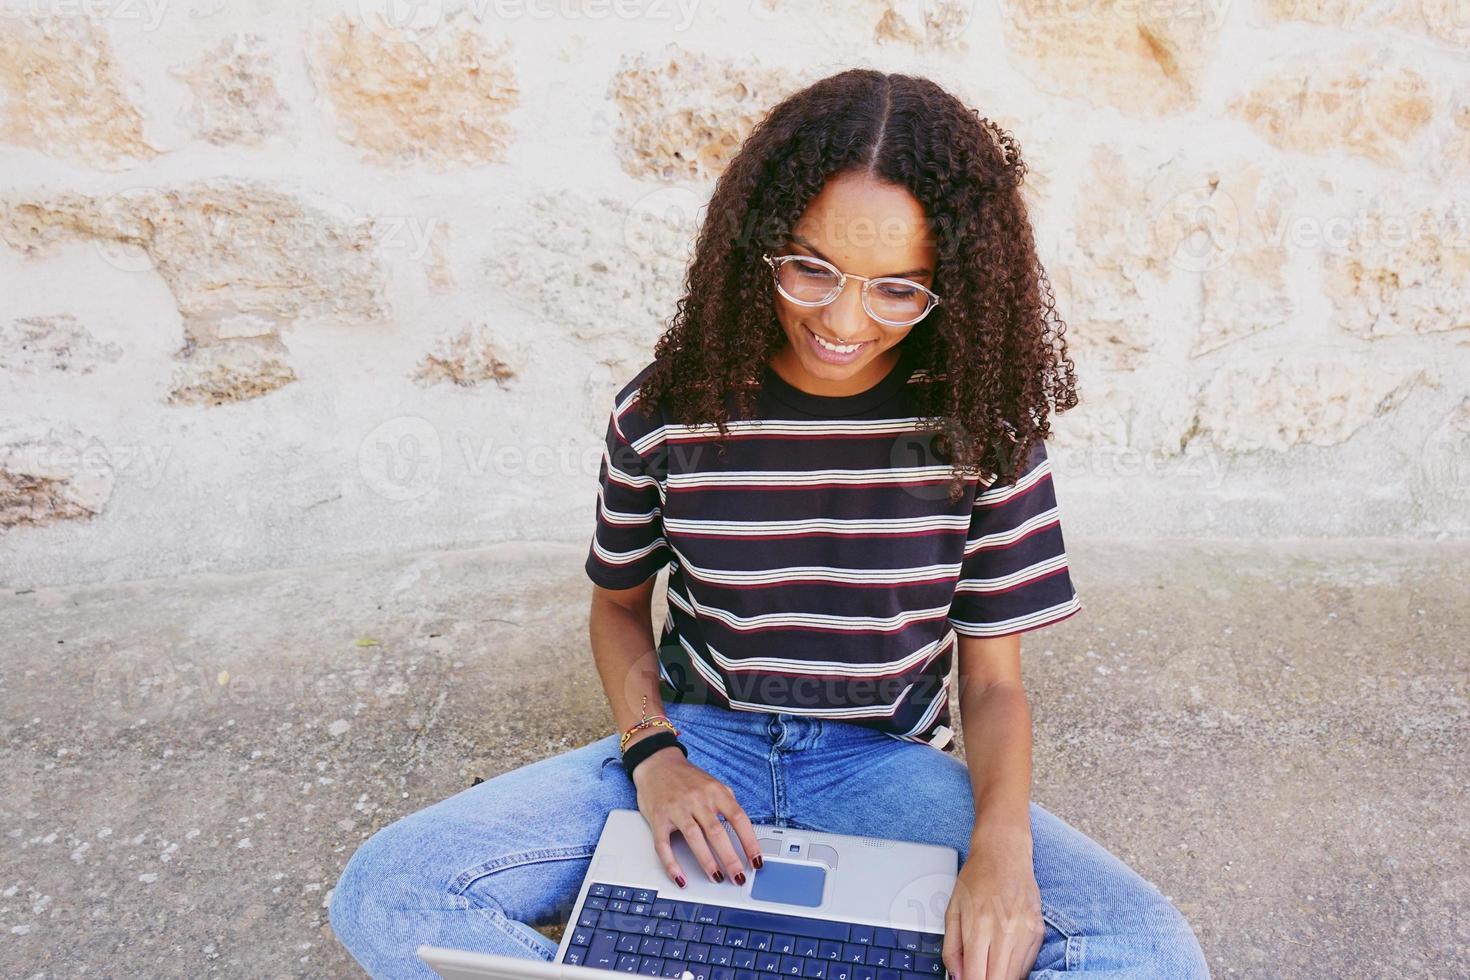 un portrait d'une jeune femme noire souriante et heureuse aux cheveux bouclés portant des lunettes, un jean et un t-shirt rayé, assise par terre et travaillant ou faisant ses devoirs photo